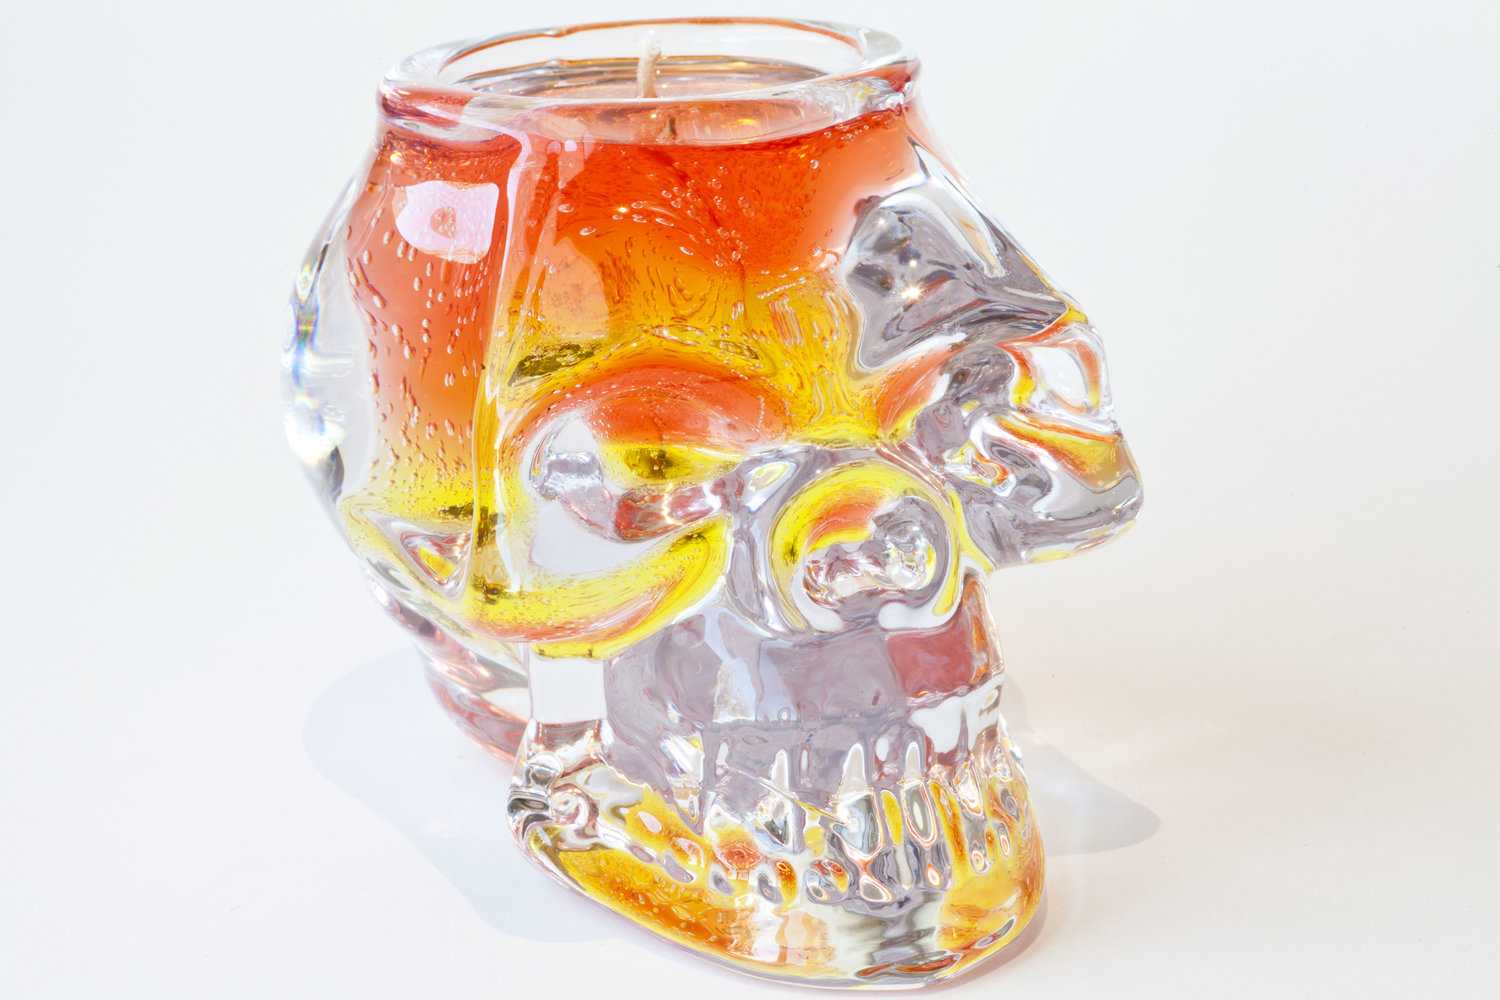 Gemstone skull candle